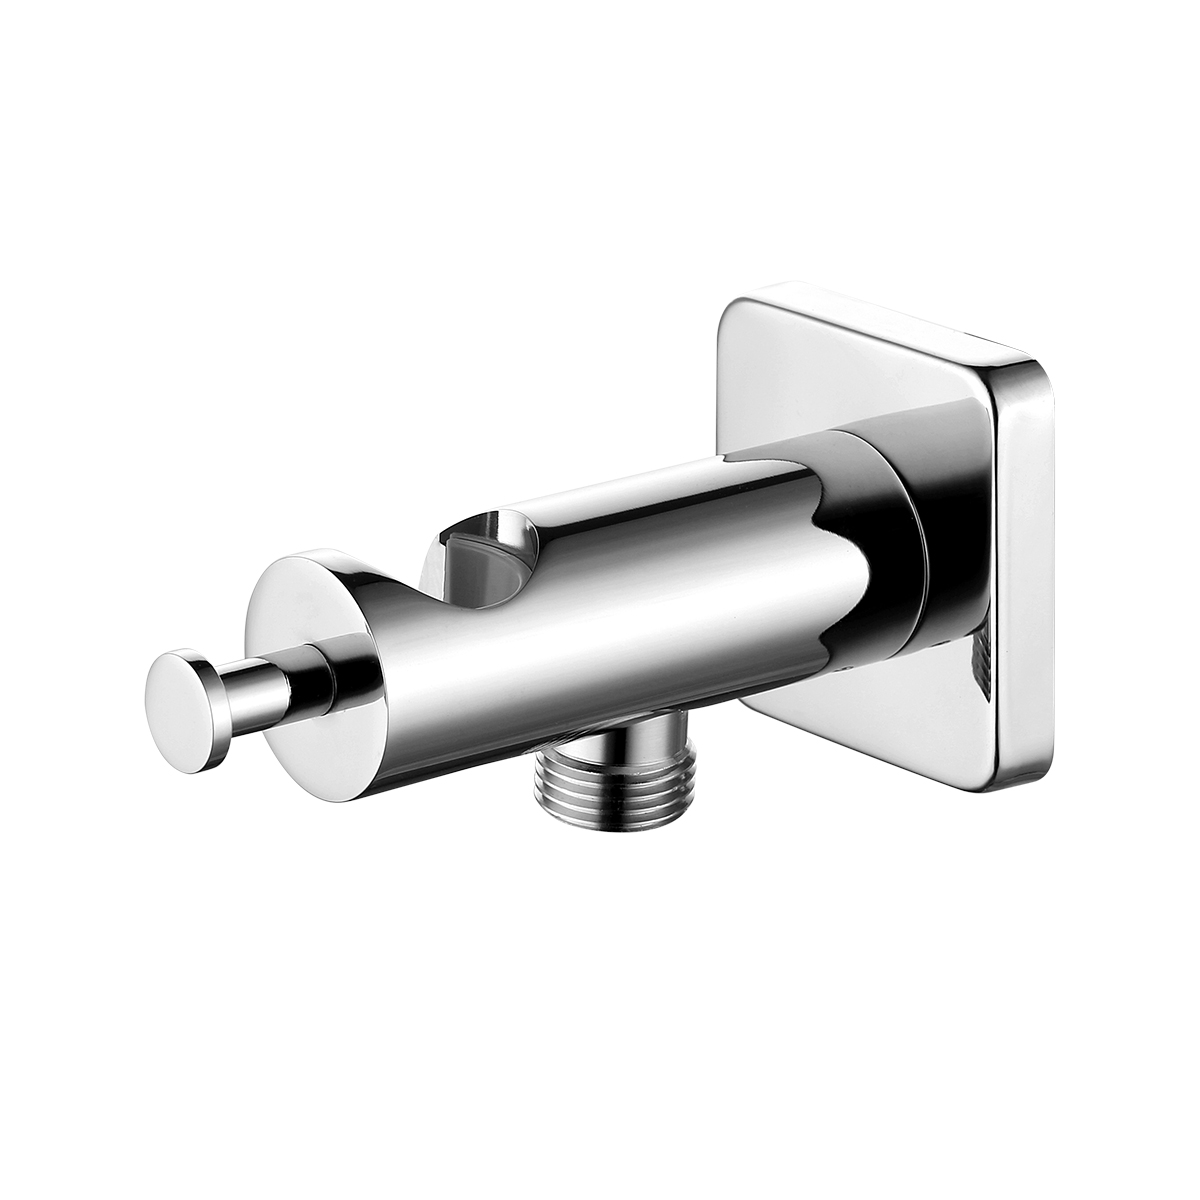 LM7885C Integrated shower holder/hose connector